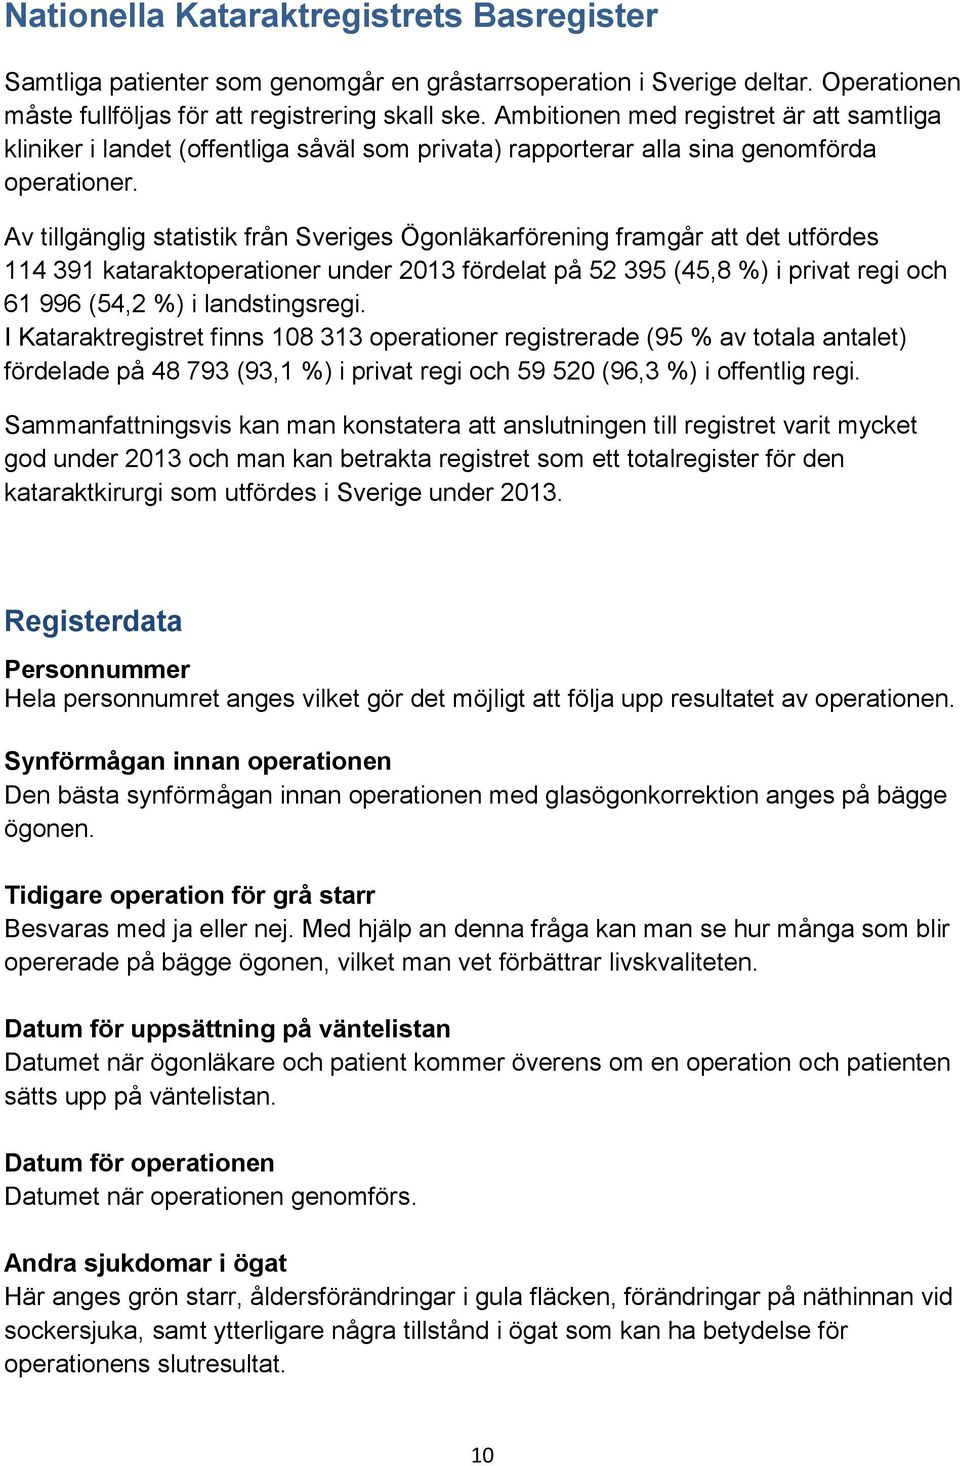 Av tillgänglig statistik från Sveriges Ögonläkarförening framgår att det utfördes 114 391 kataraktoperationer under 2013 fördelat på 52 395 (45,8 %) i privat regi och 61 996 (54,2 %) i landstingsregi.